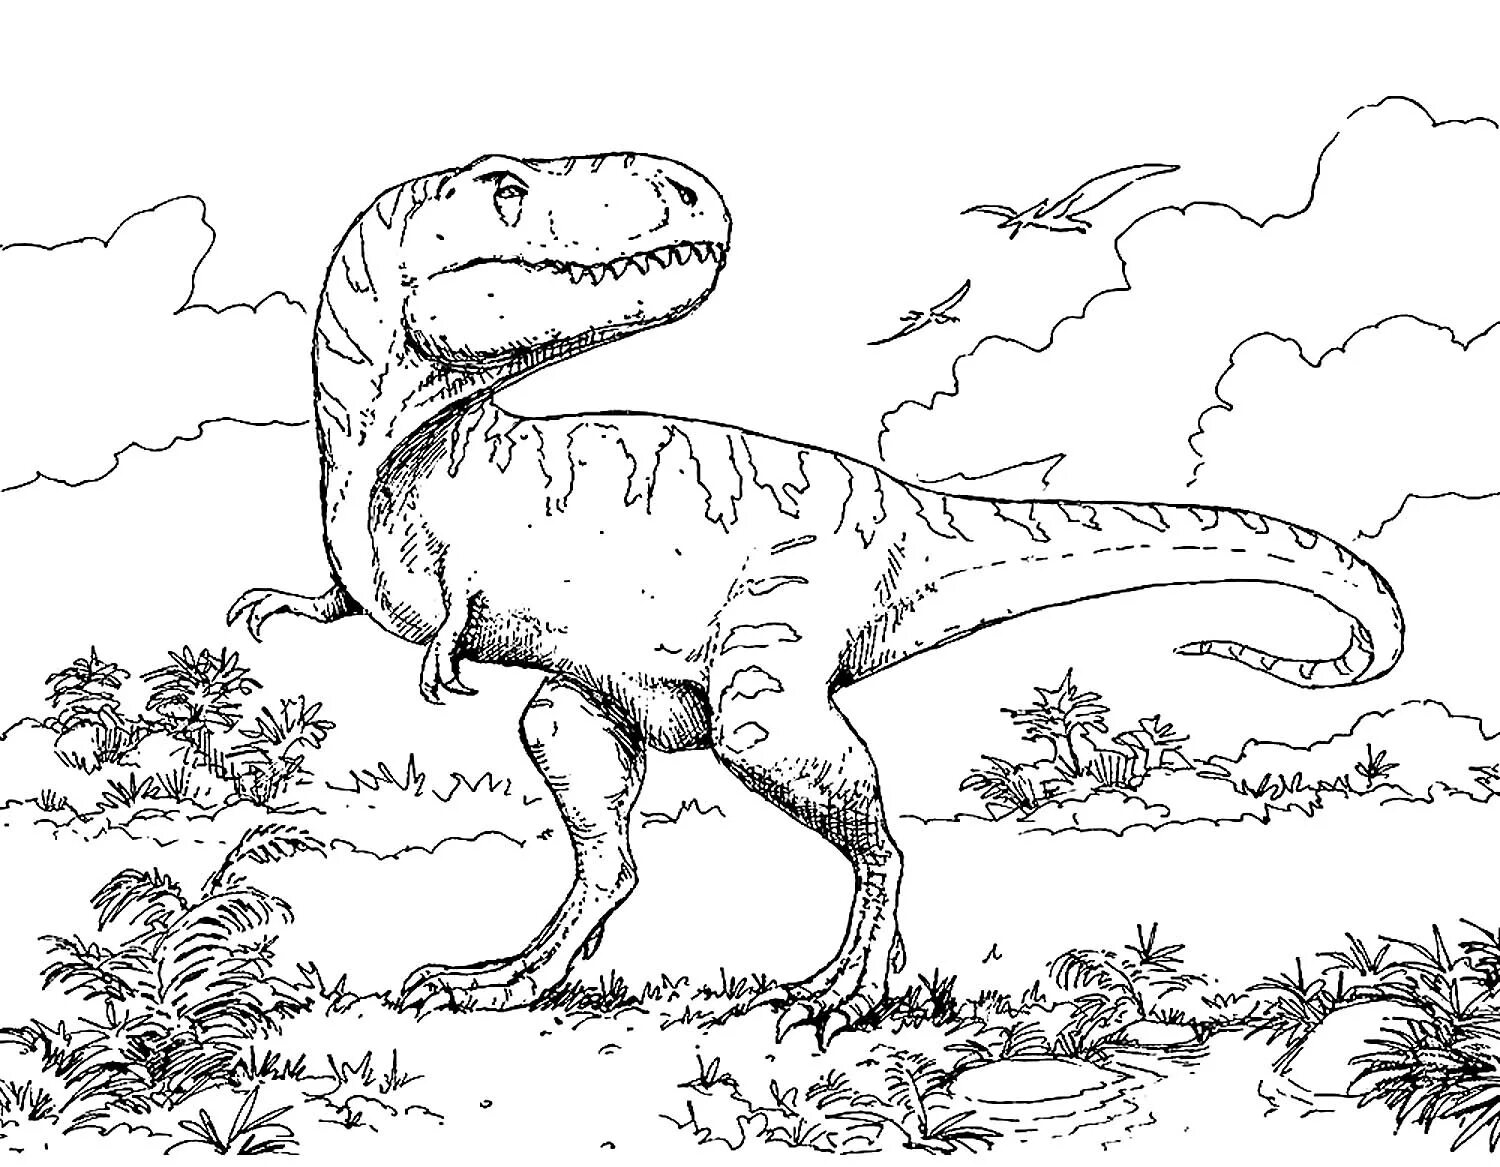 Incredible dinosaurs coloring book